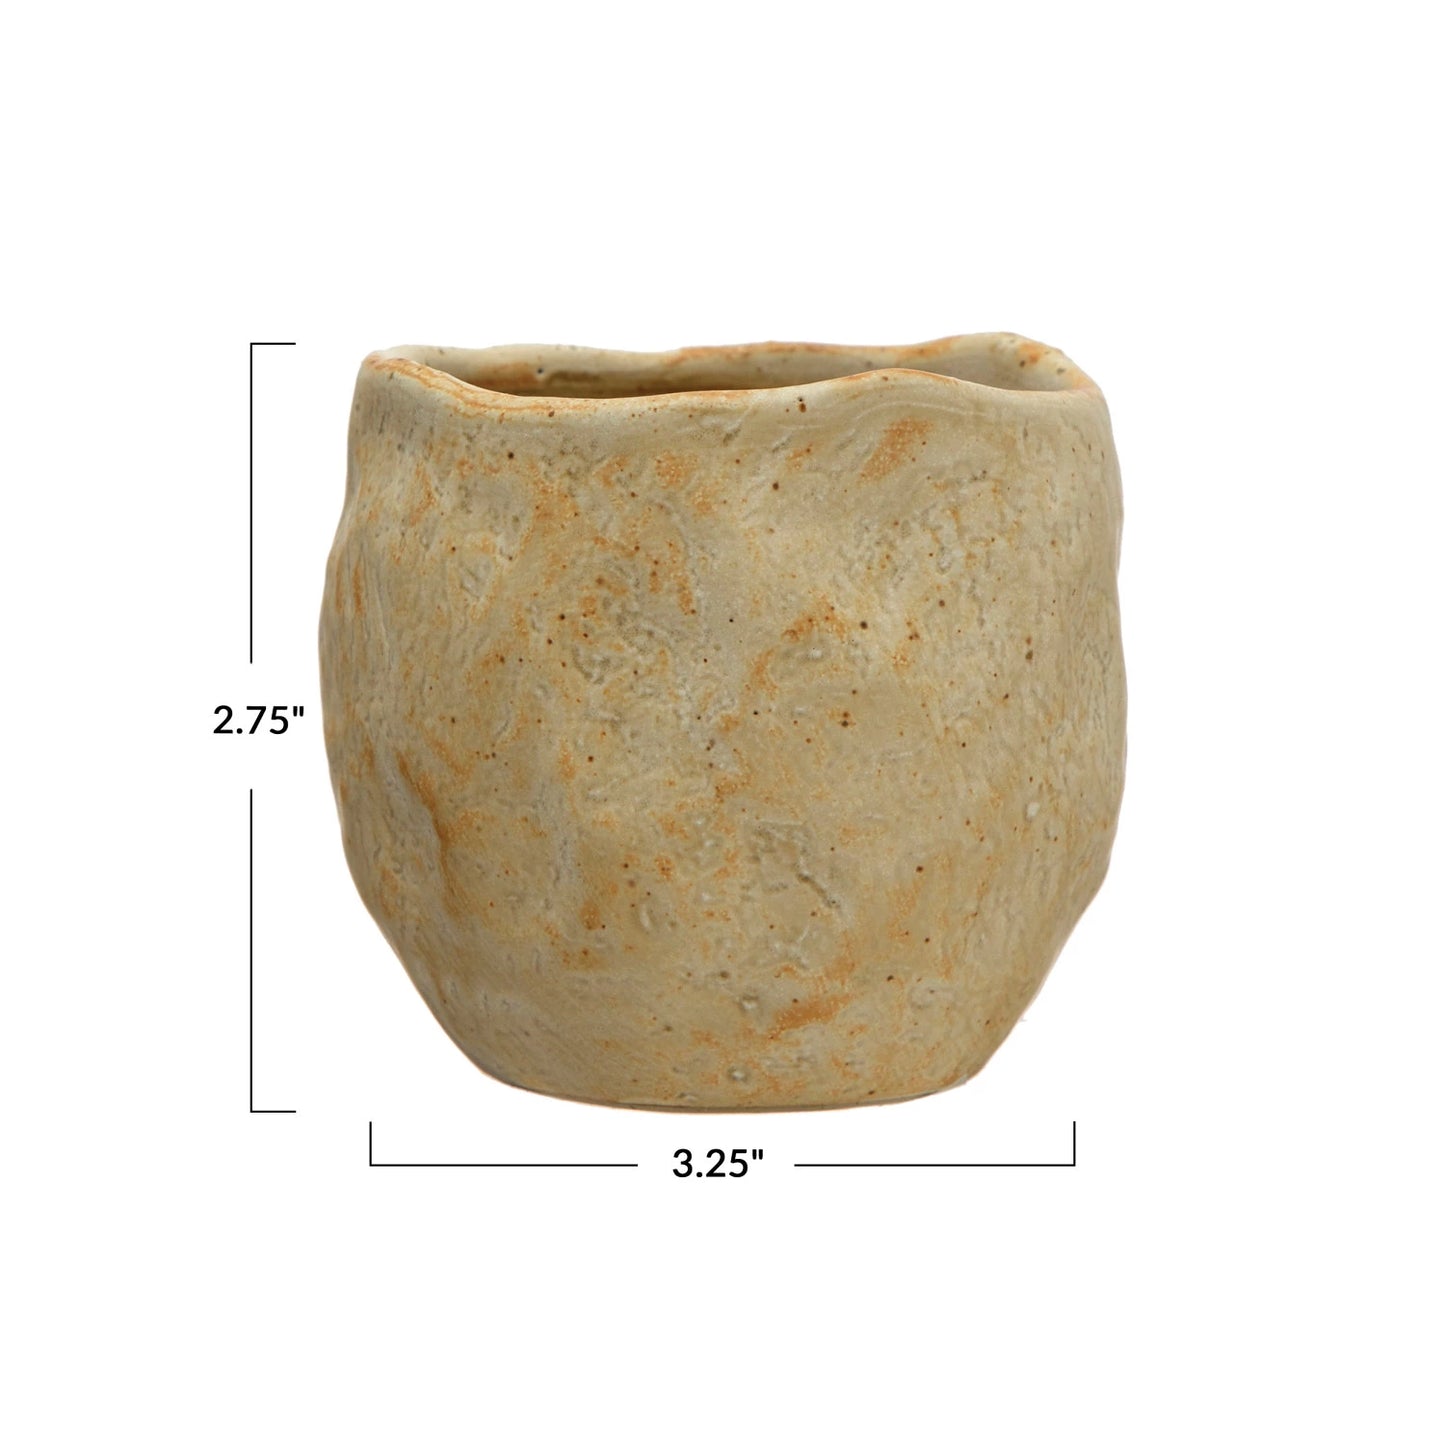 8 oz. Stoneware Cup, Tan Color